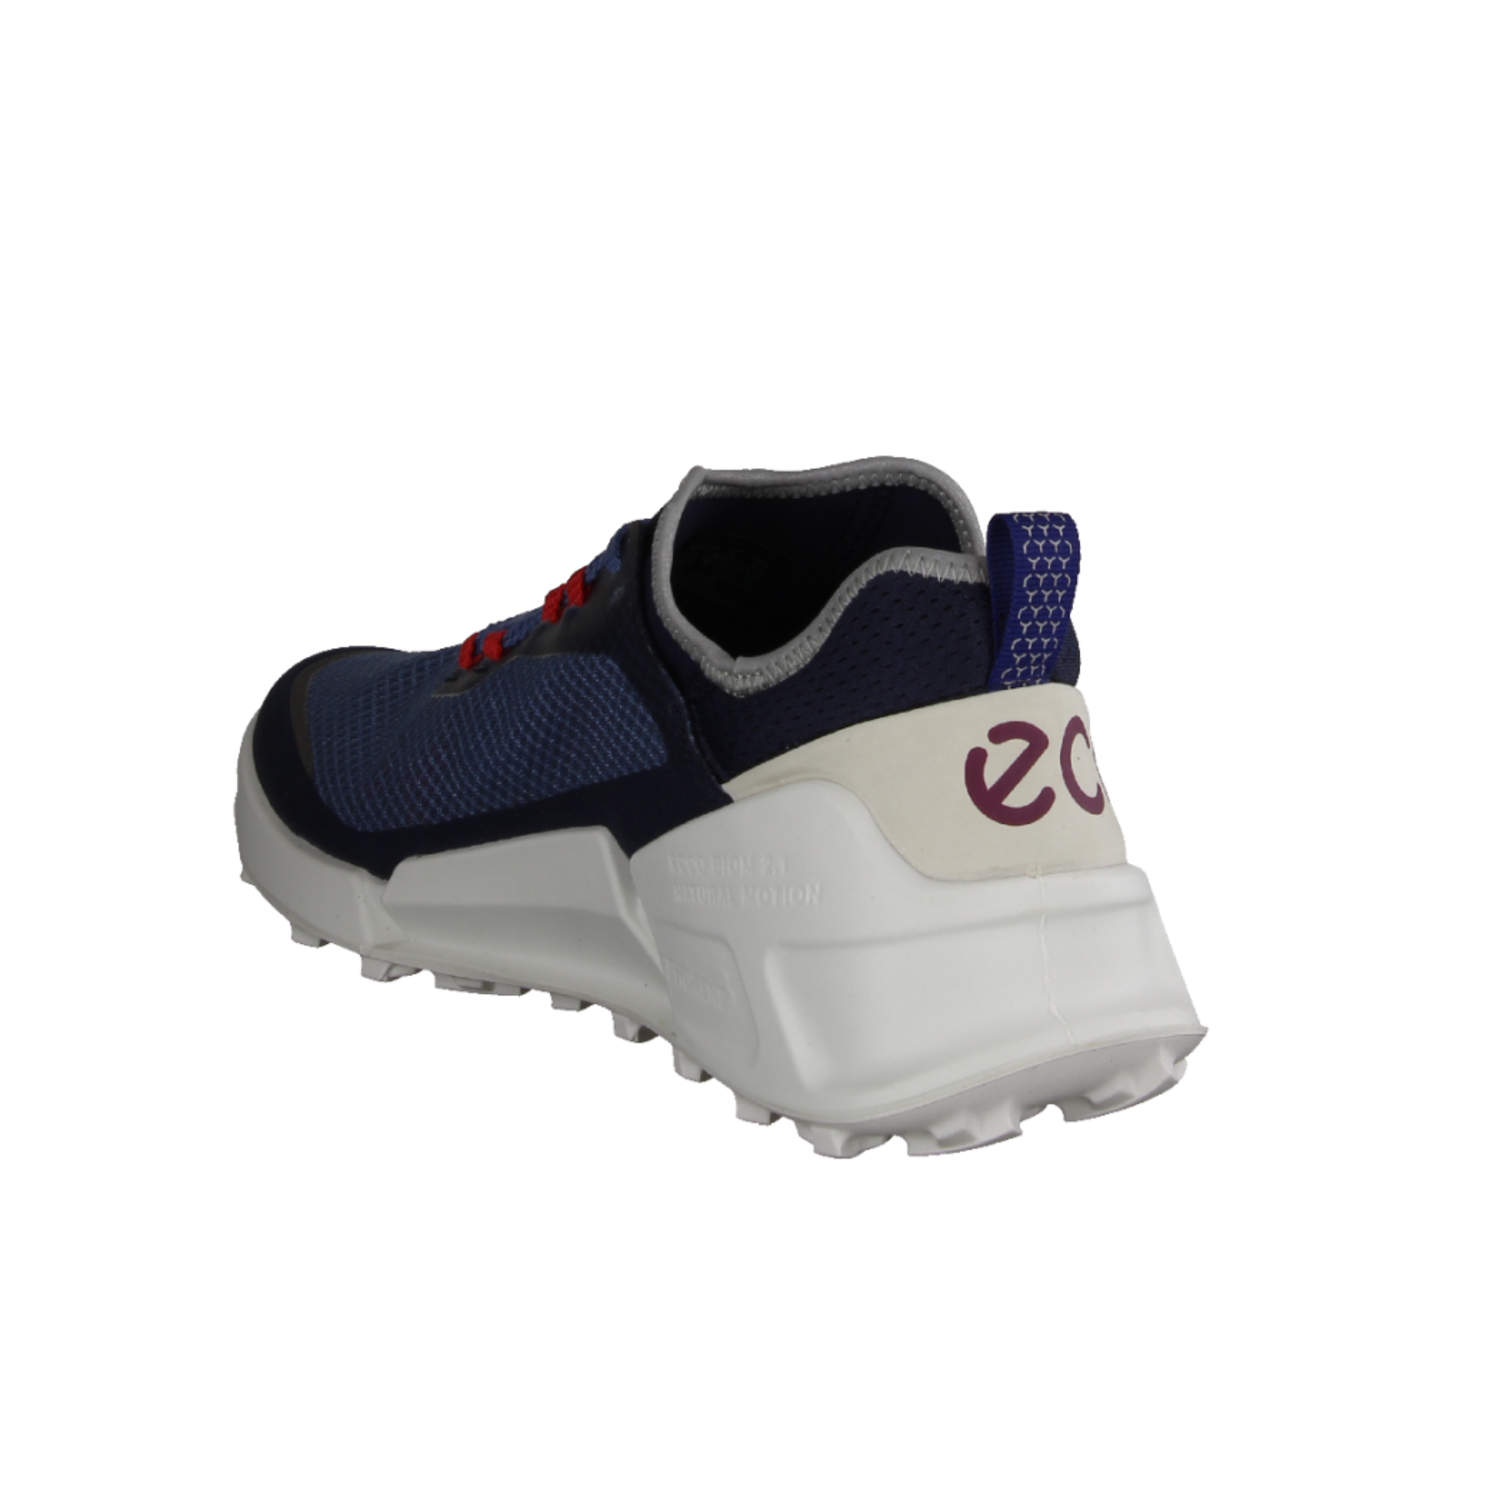 Ecco Biom 2.1 X Country M 8228046059 moderner Sneaker für Herren Marine/Retro  Blue/Shadow White